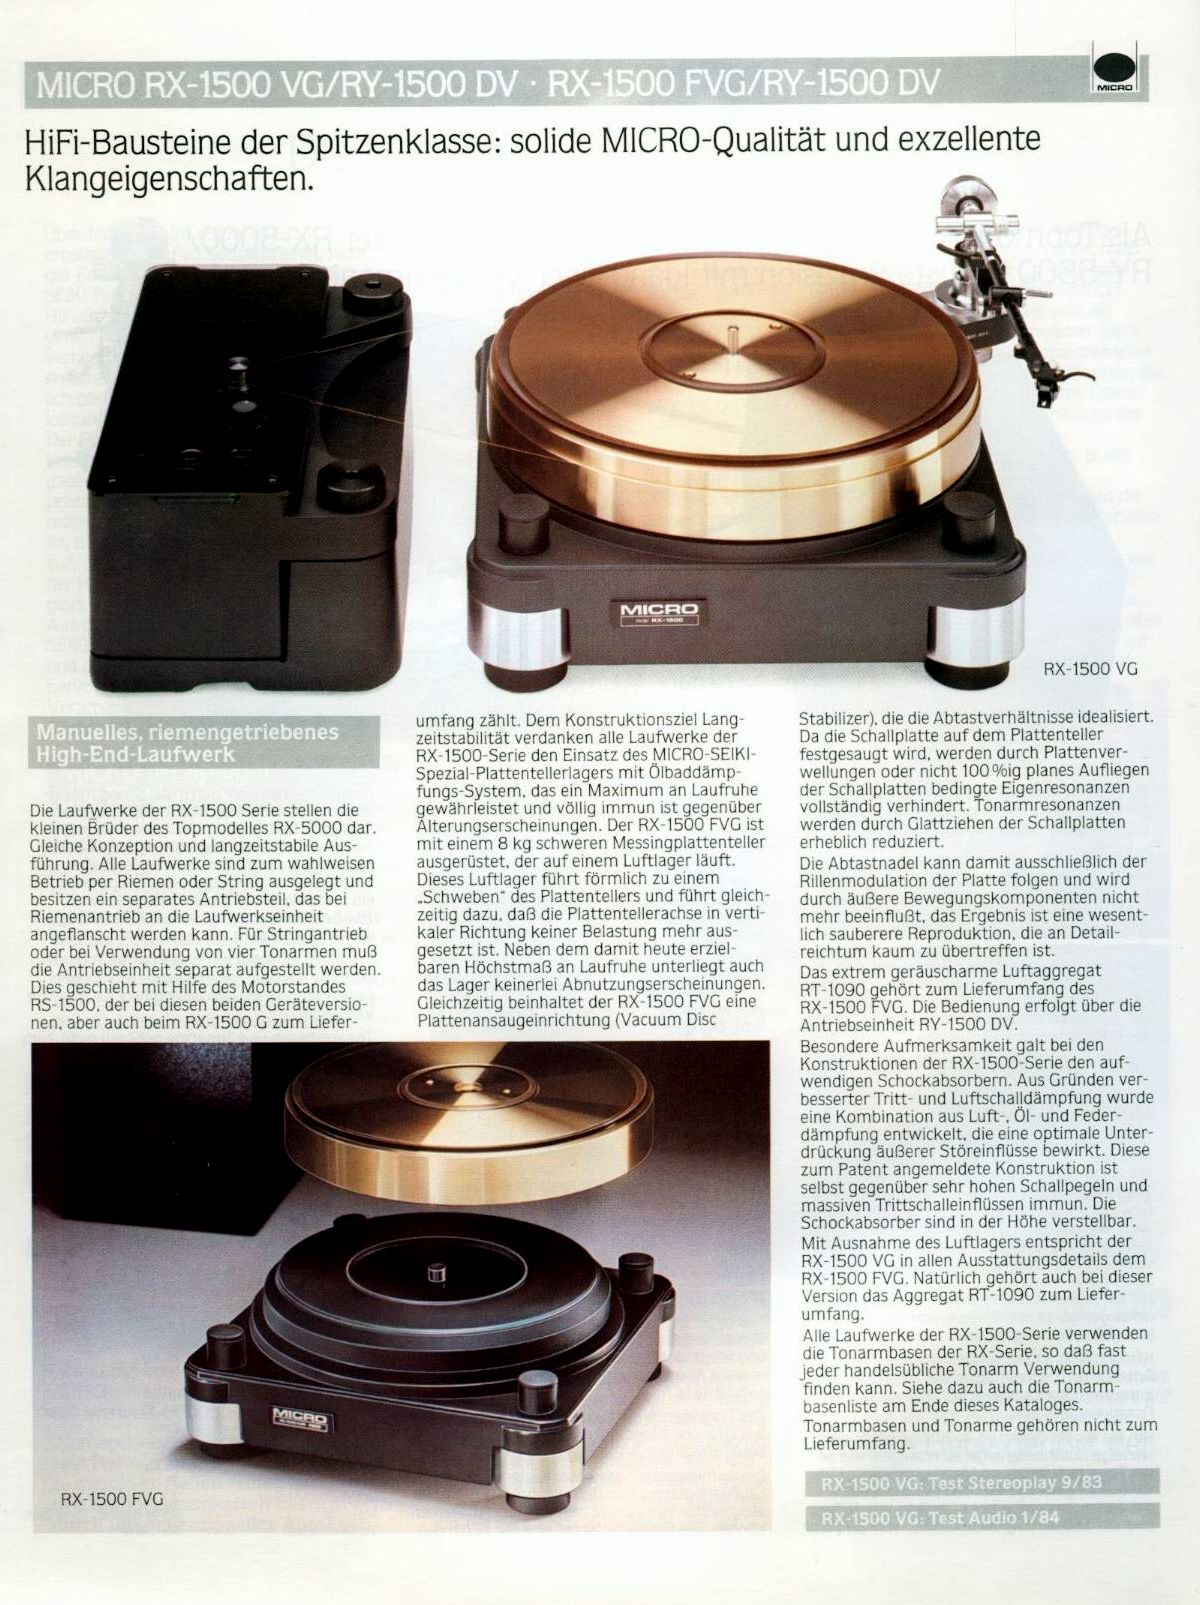 Micro Seiki RX-1500-FVG-VG-Prospekt-1984.jpg